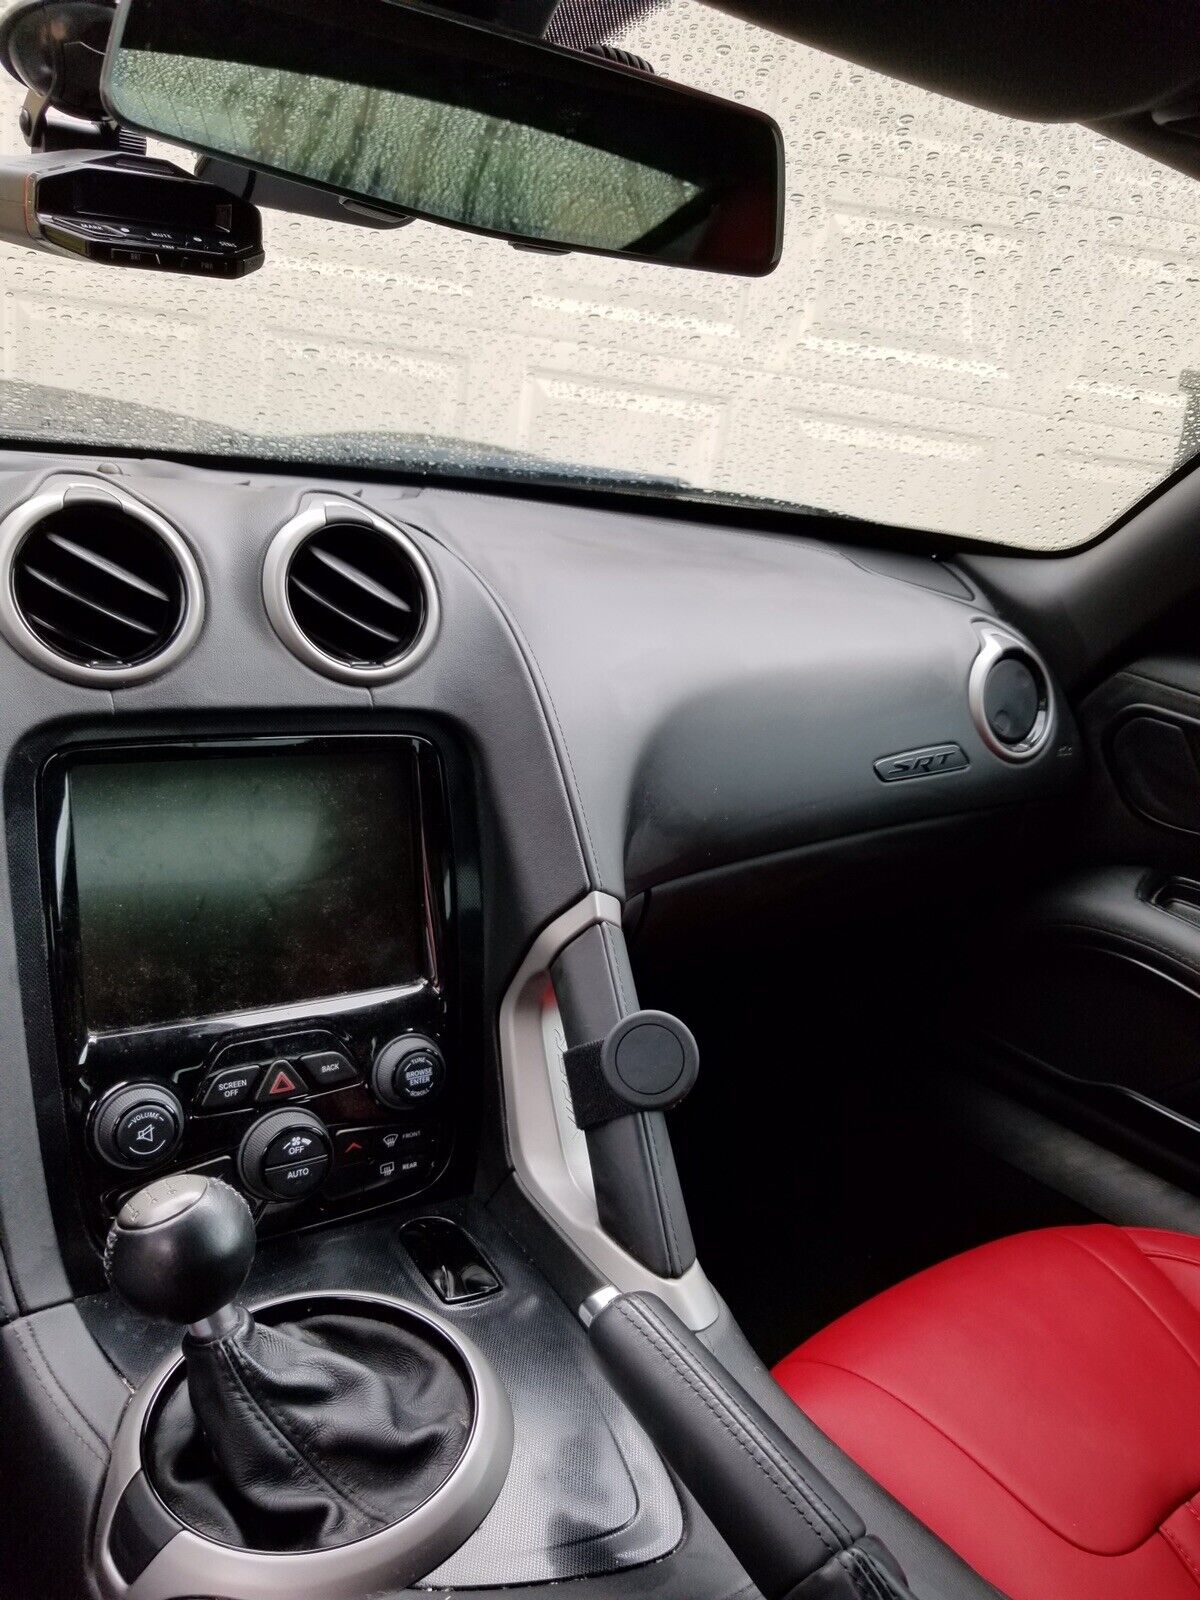 Dodge SRT Viper Cell Phone Mount (Holder/Bracket) Fifth Generation (VX, 2013 +)